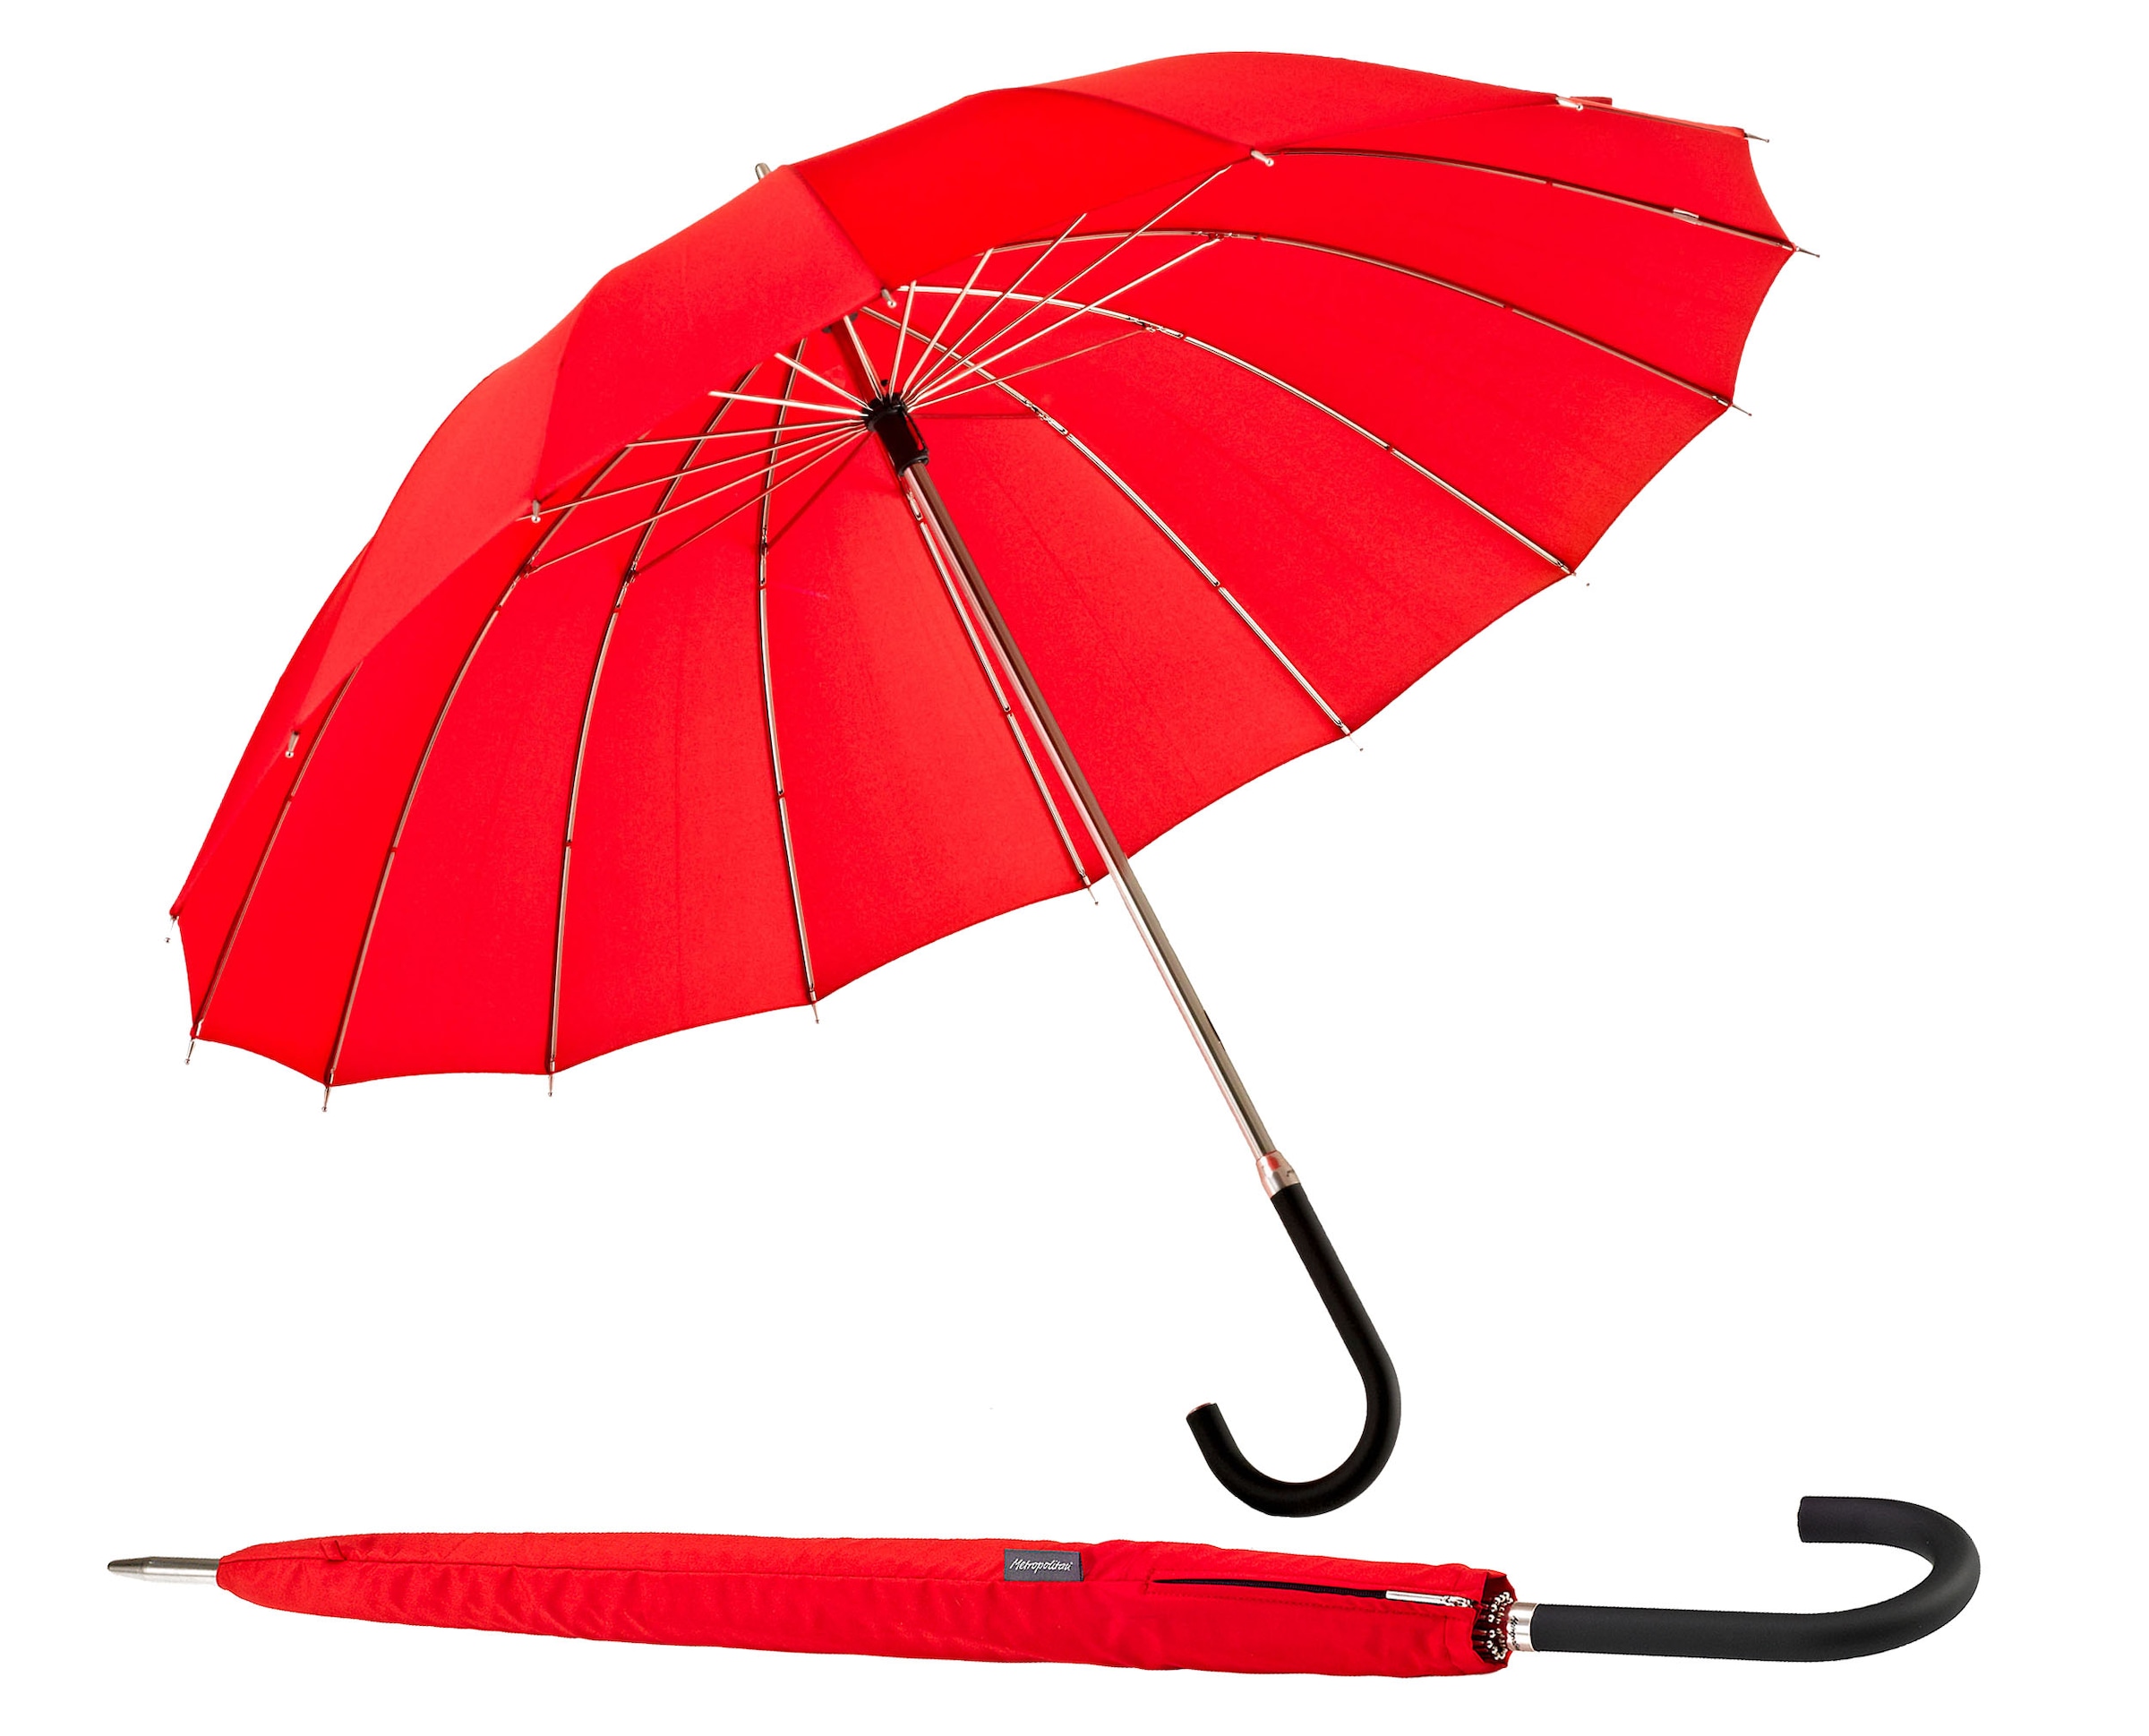 Stockregenschirm »Metropolitan®, rot«, mit 16 Segmenten und eleganter Dachwölbung